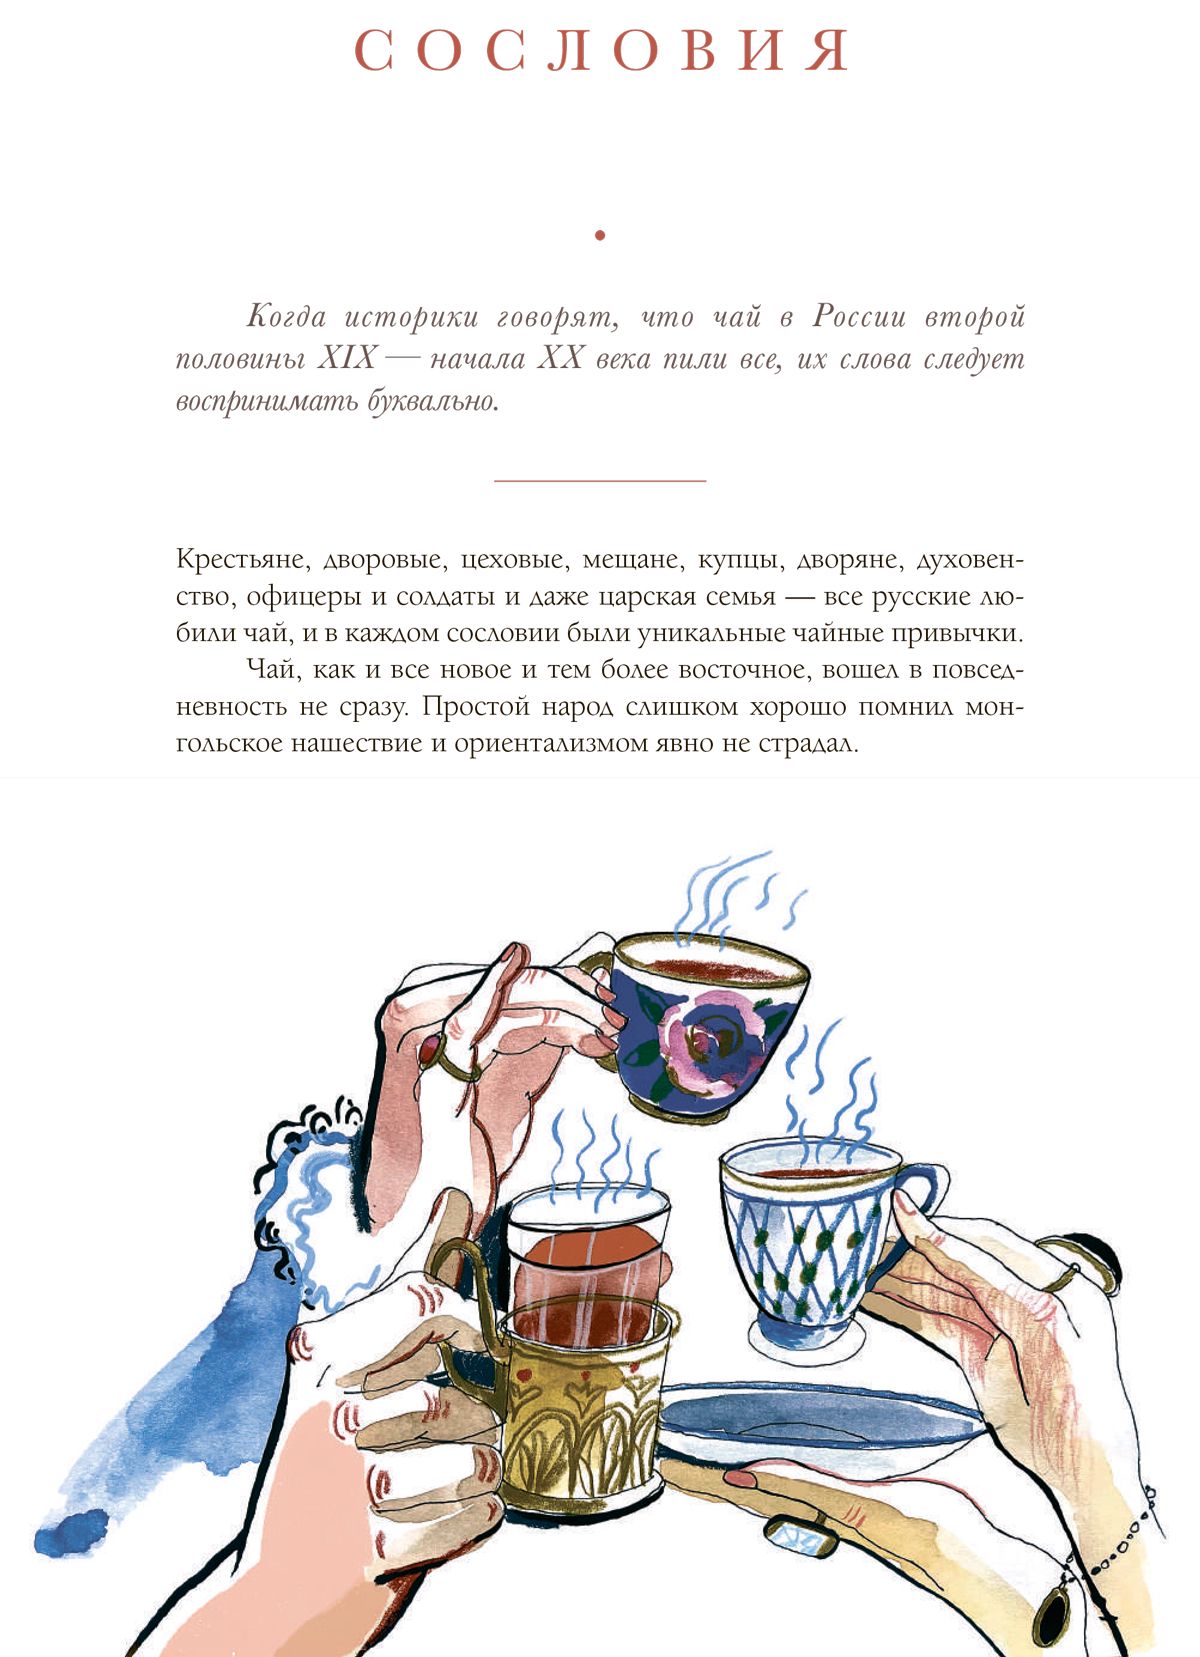 Какие напитки пили на Руси до кофе и чая?